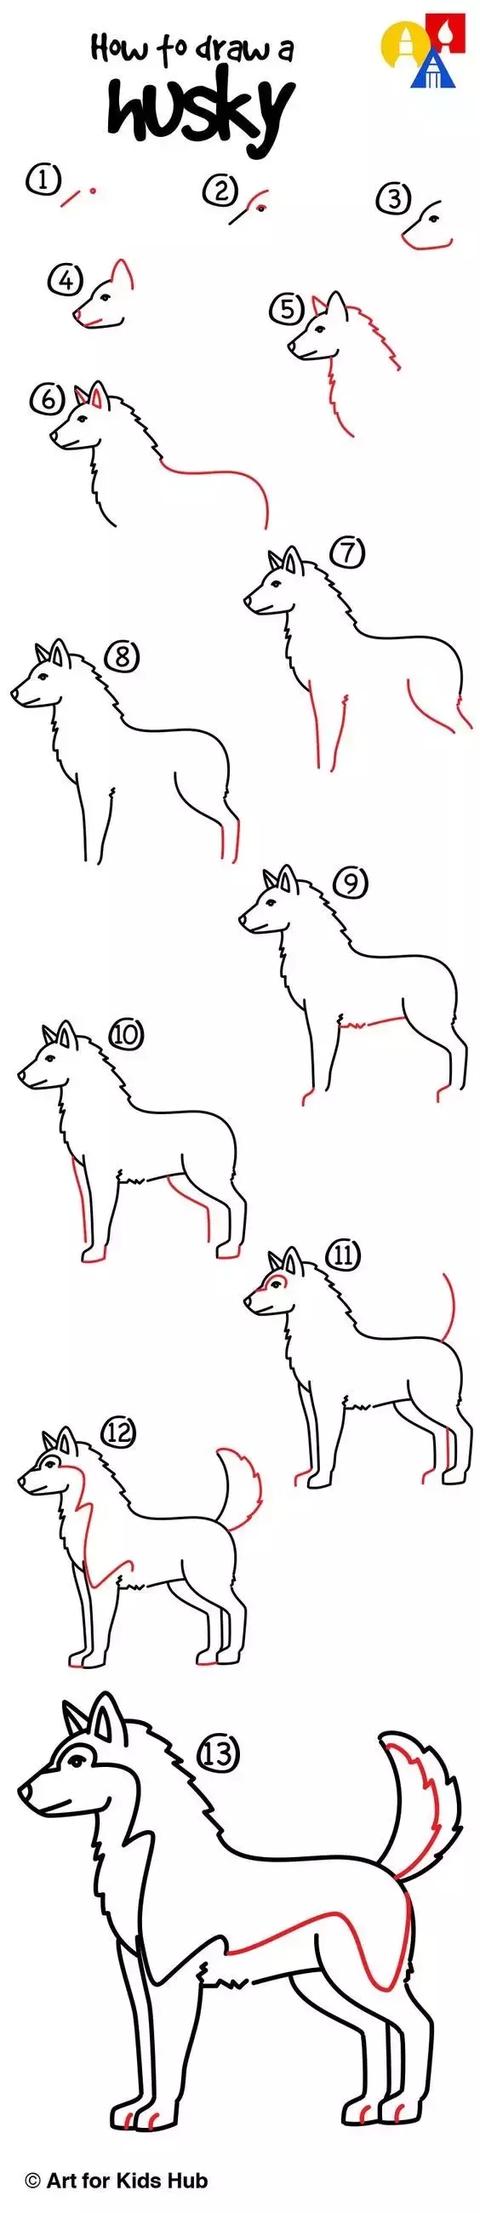 九个小狗的简笔画法详细教程